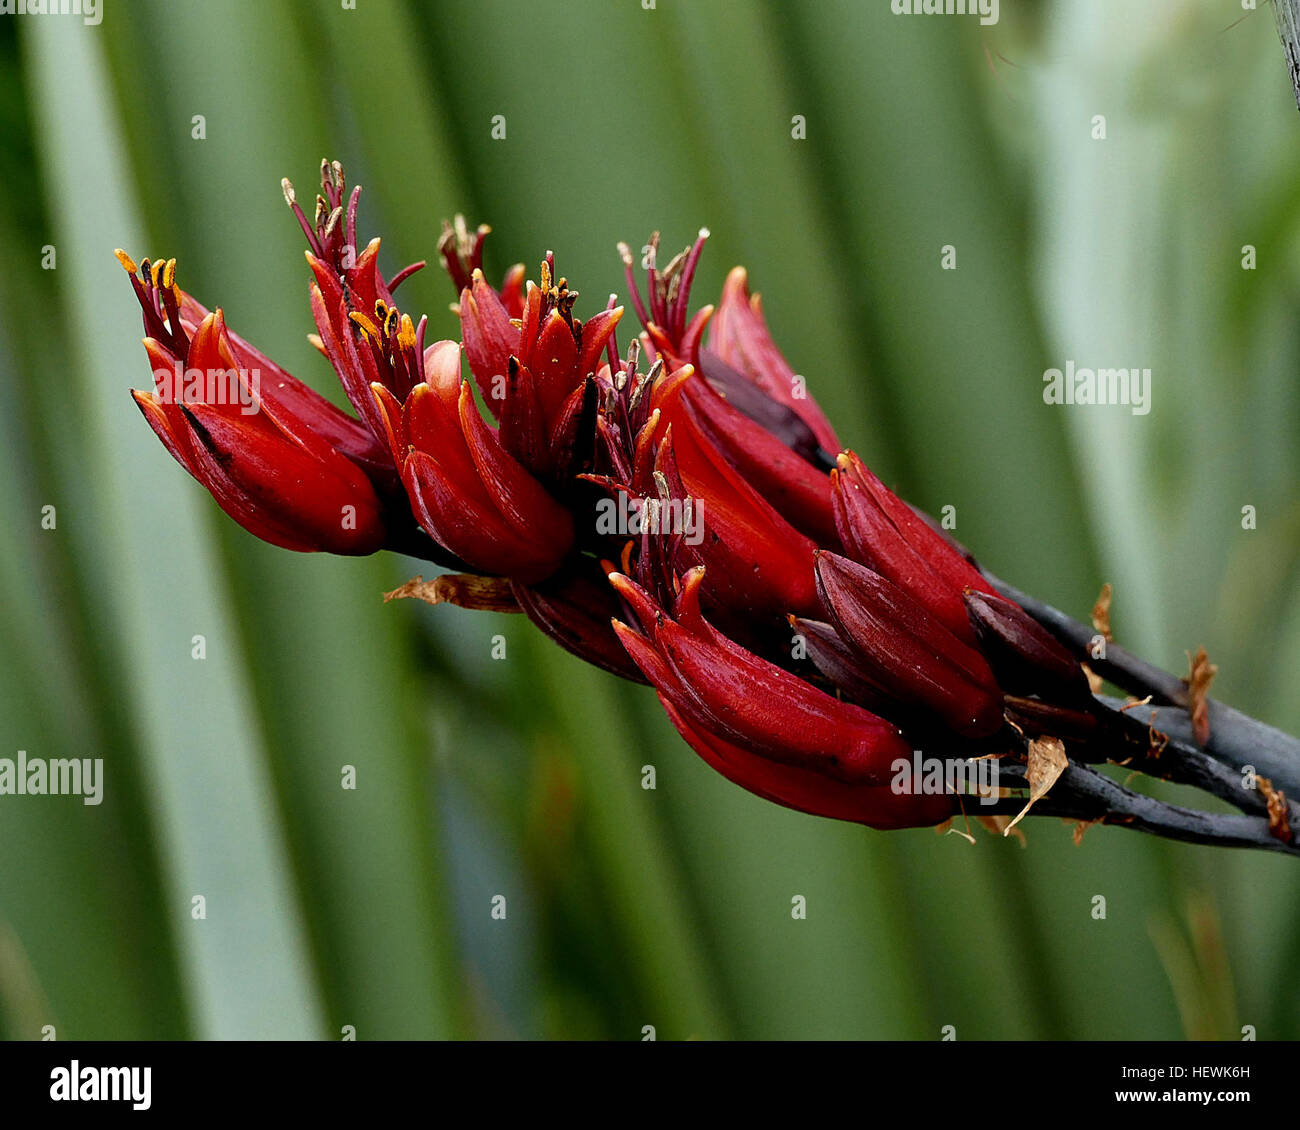 Neuseeland-Flachs ist eine der markantesten heimischen Pflanzen des Landes. Es hat Schwert-förmige Blätter 1 – 3 m lang, die fächerförmig wachsen. Im Frühling, Vögel – besonders Tūī-Herde zu ernähren sich von Nektar der röhrenförmigen Blüten, blühen die am Stängel bis zu 4,5 Meter lang. Durch das tragen Pollen von Pflanze zu Pflanze, helfen die Vögel Flachs Samen in langen Hülsen zu produzieren. Arten von Flachs Neuseeland Flachs ist keine wahre Flachs wie Leinen Flachs (Linum Usitatissimum), sondern auf die Taglilie. Es gehört zu der Hemerocallidaceae Familie und Gattung Phormium. Es wächst natürlich nur in Neuseeland und Stockfoto